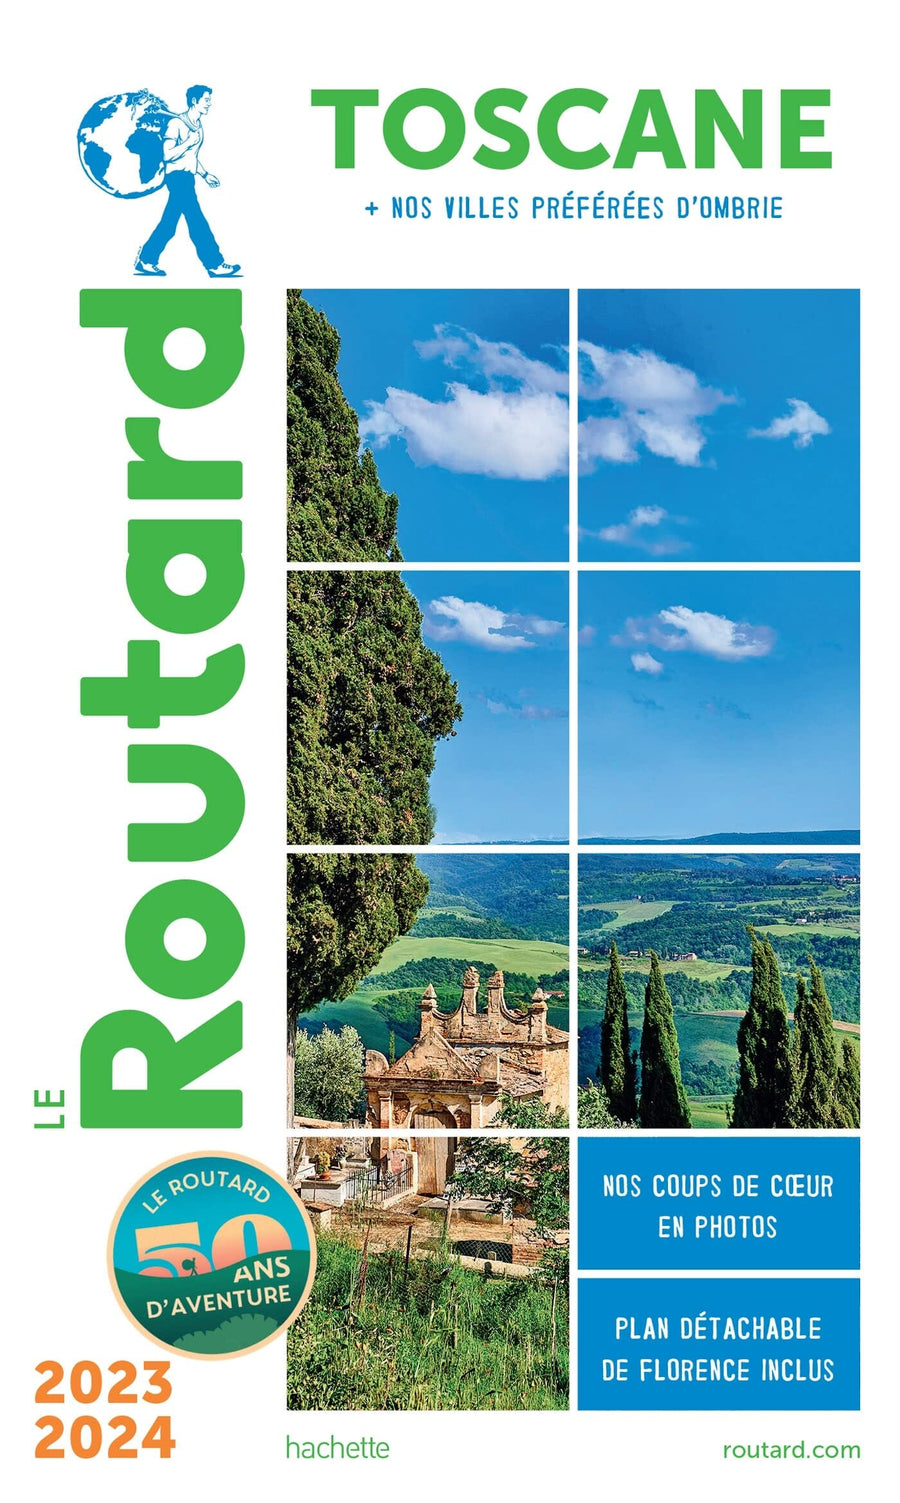 Guide du Routard - Toscane & Ombrie 2023/24 | Hachette guide de voyage Hachette 